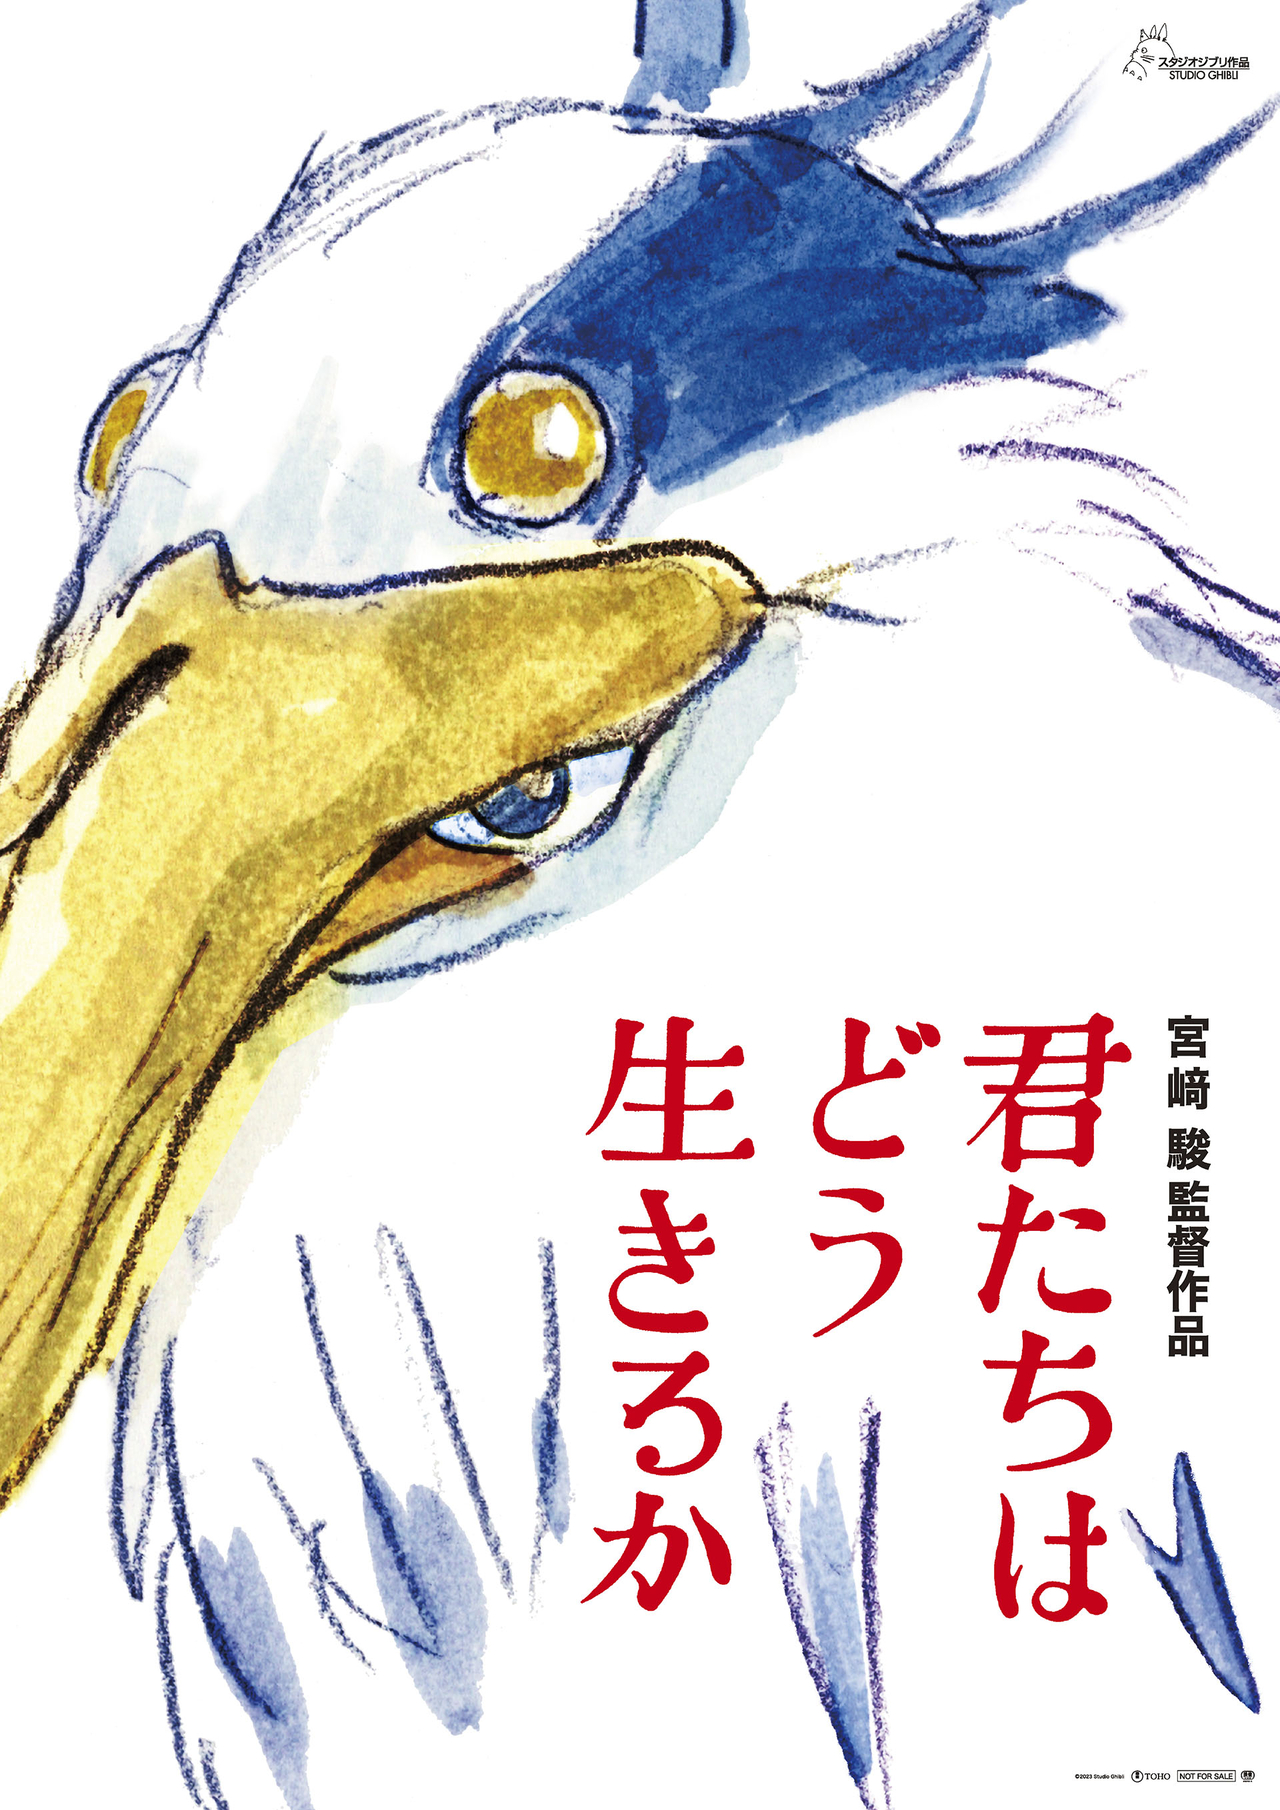 宮崎駿監督の新作「君たちはどう生きるか」23年7月14日公開 ストーリー 